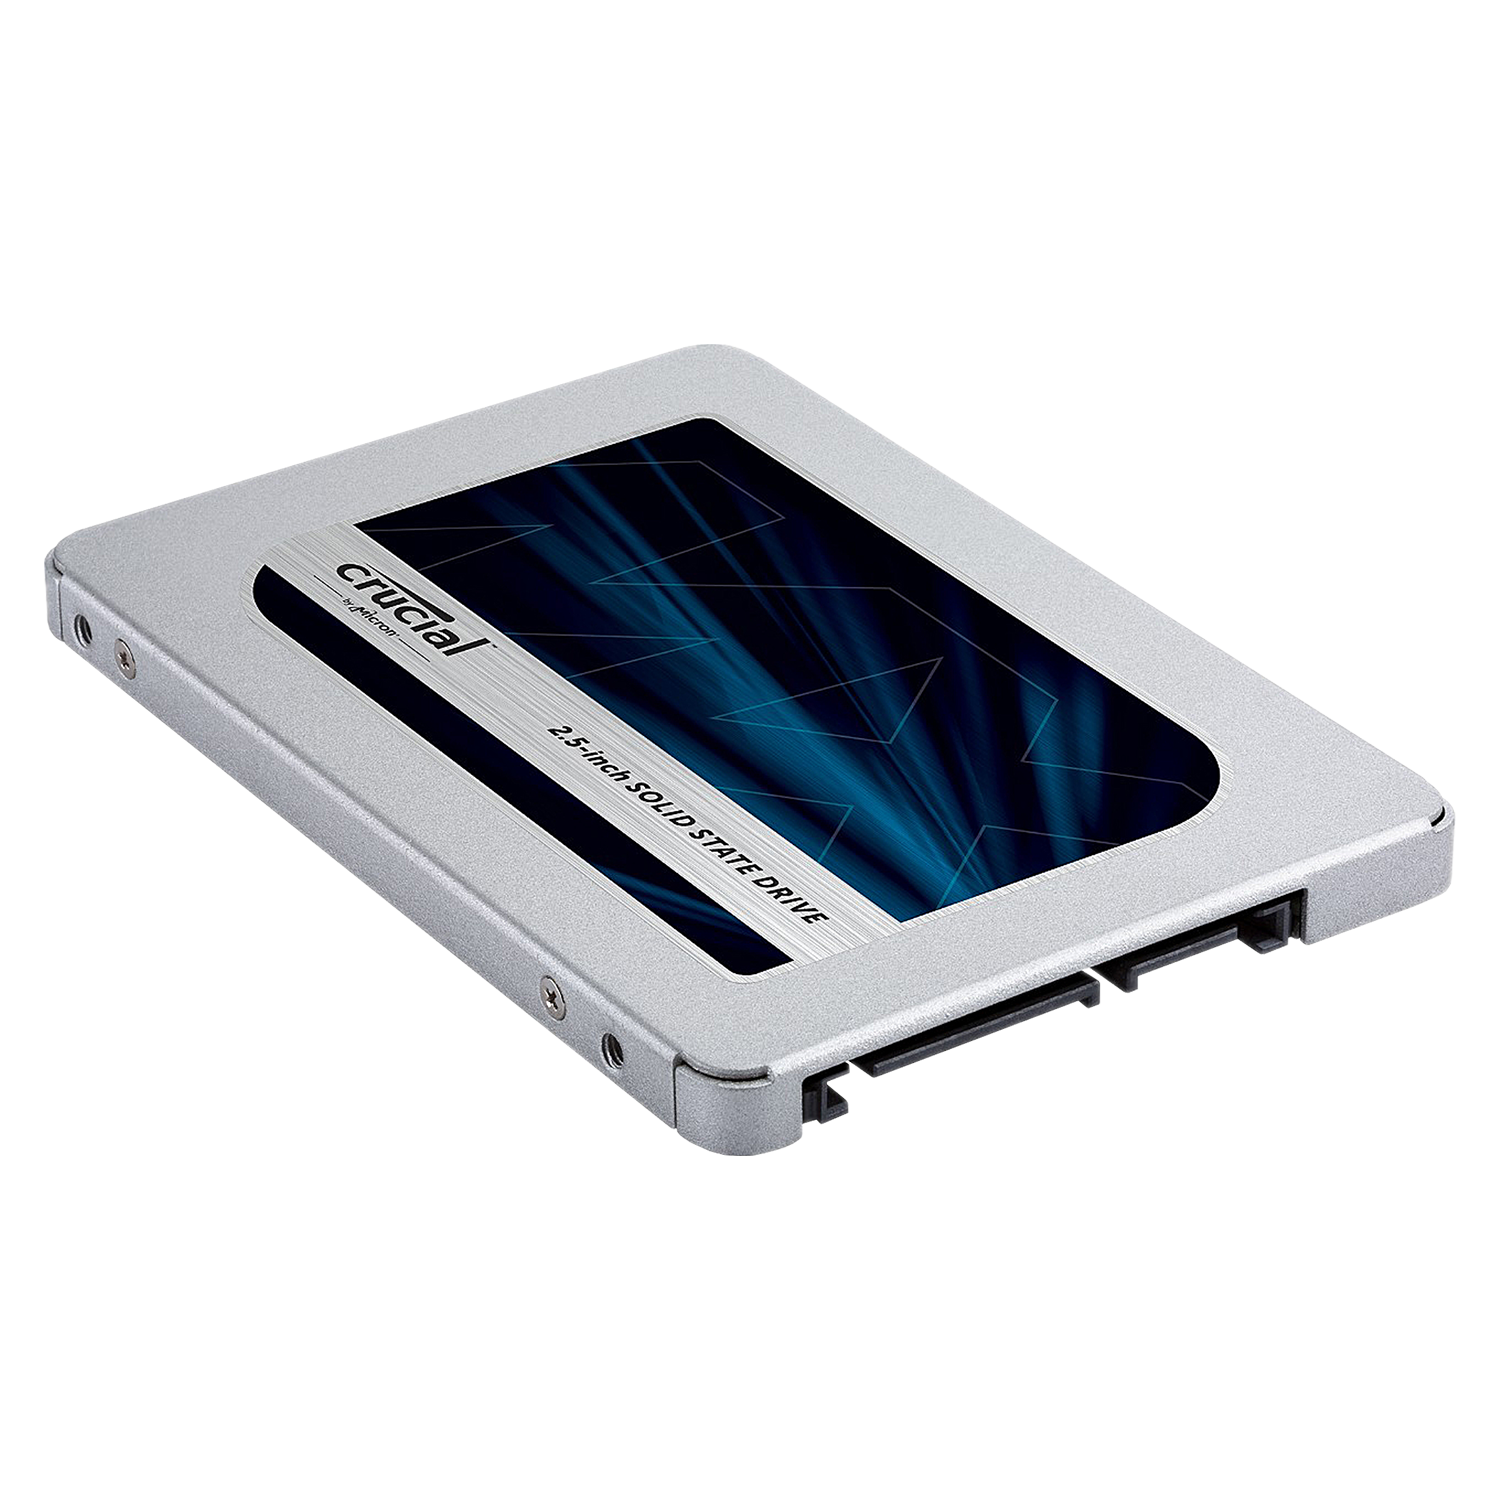 SSD Crucial MX500 2TB 2.5" SATA / Com Adaptador 9.5mm - (CT2000MX500SSD1)
